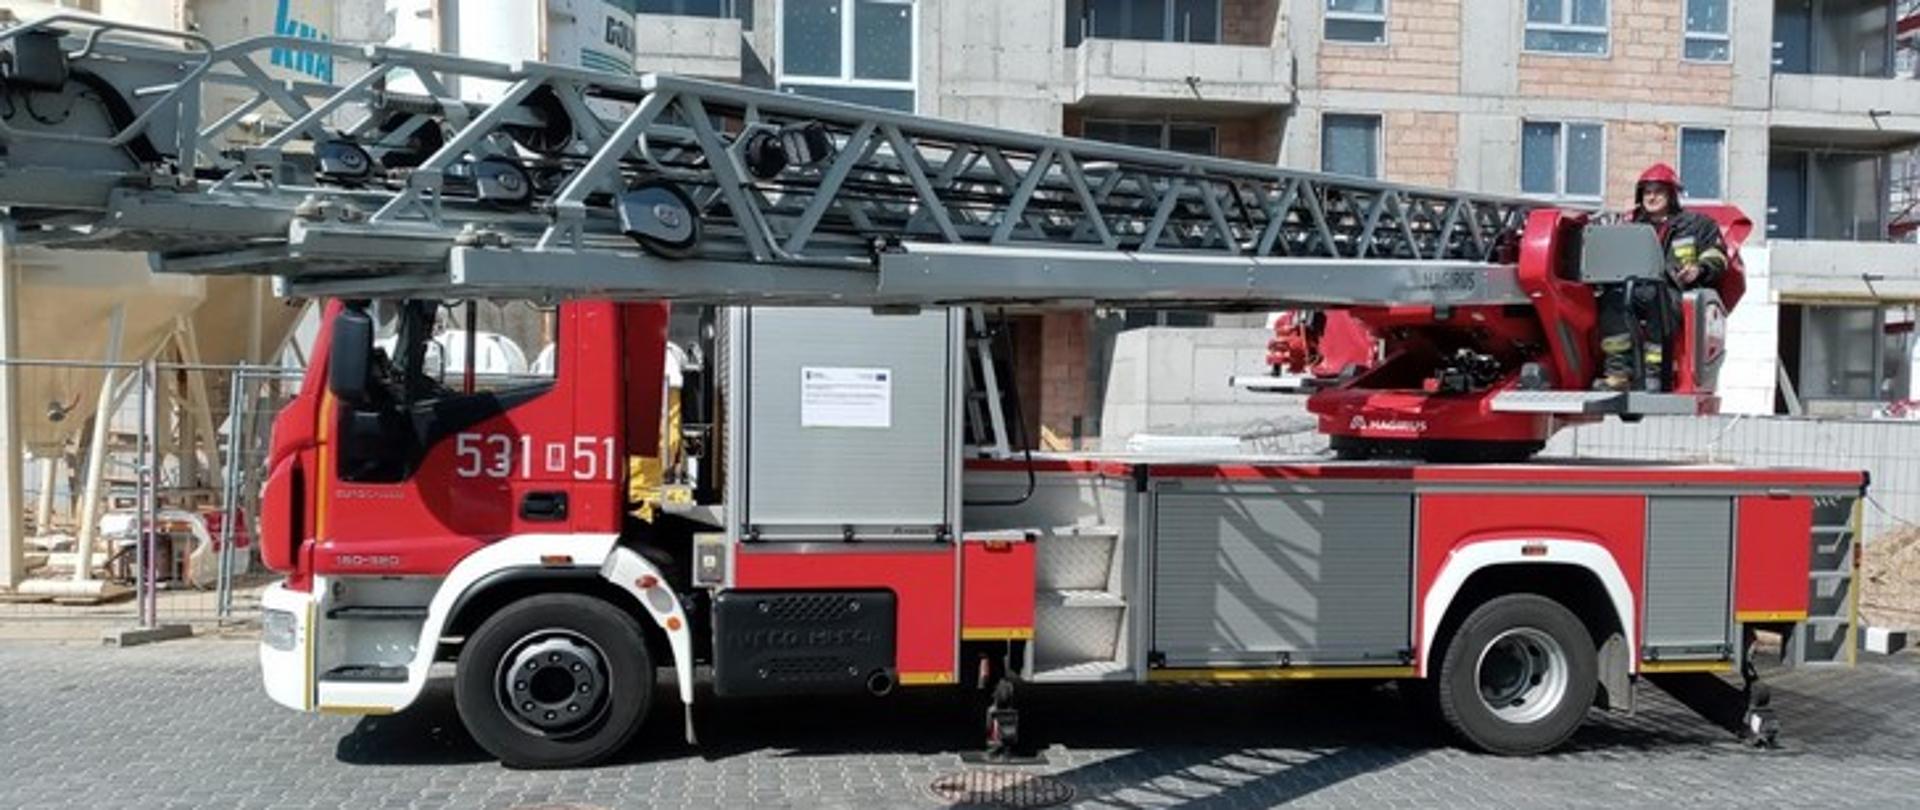 Obraz przedstawia strażacką drabinę mechaniczną z obsługującym ją strażakiem na tle nowo budowanego budynku wielorodzinnego.